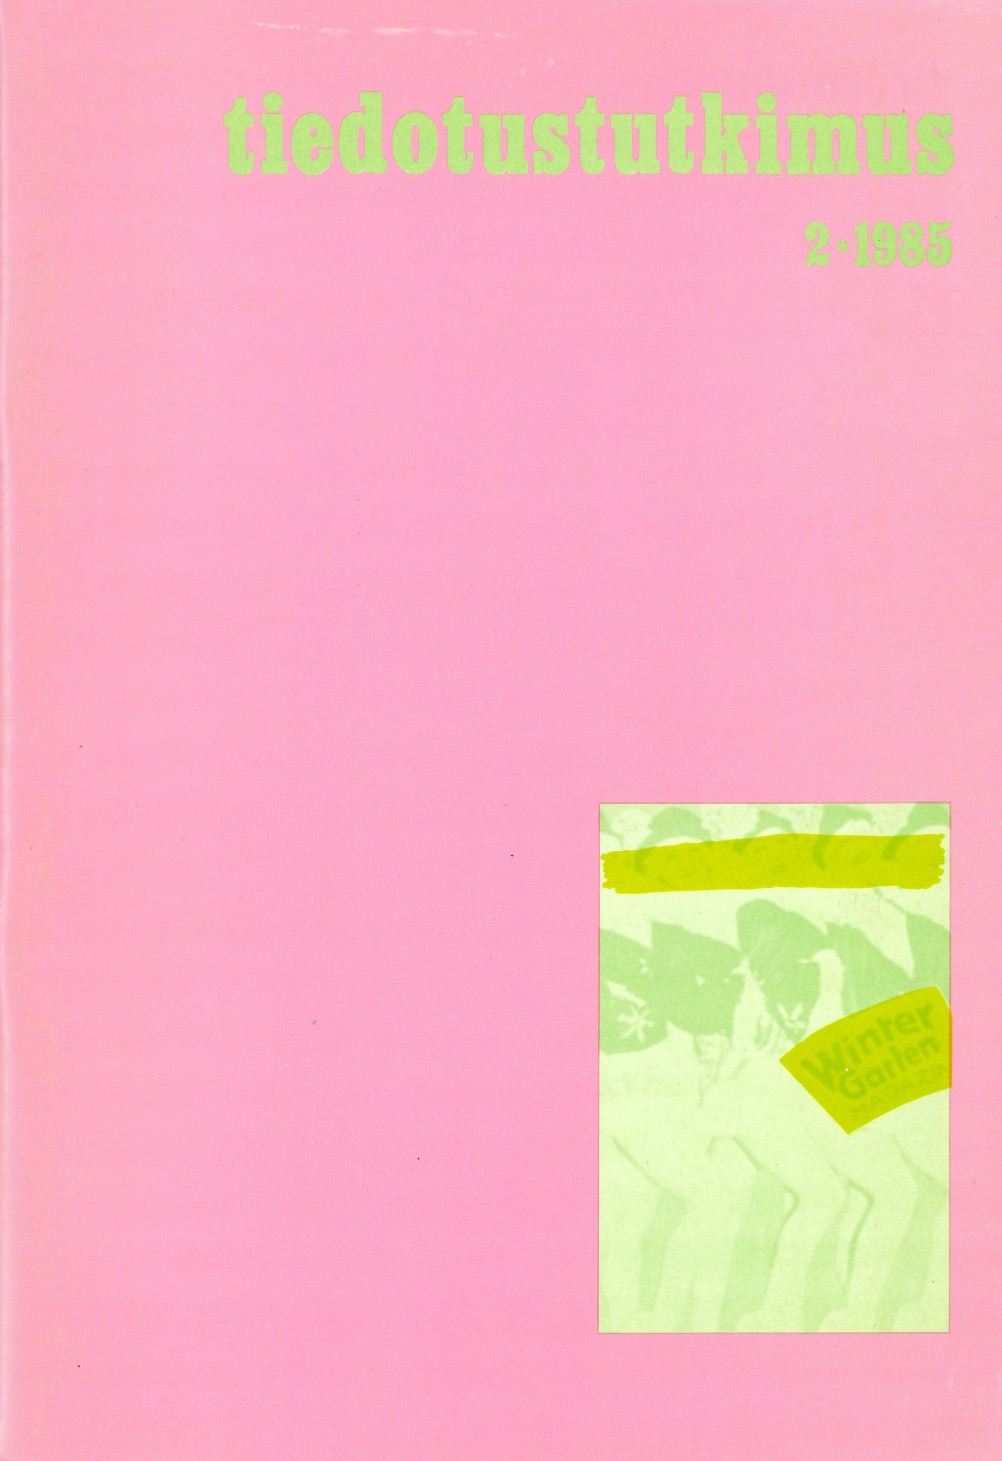 					Näytä Vol 8 Nro 2 (1985)
				